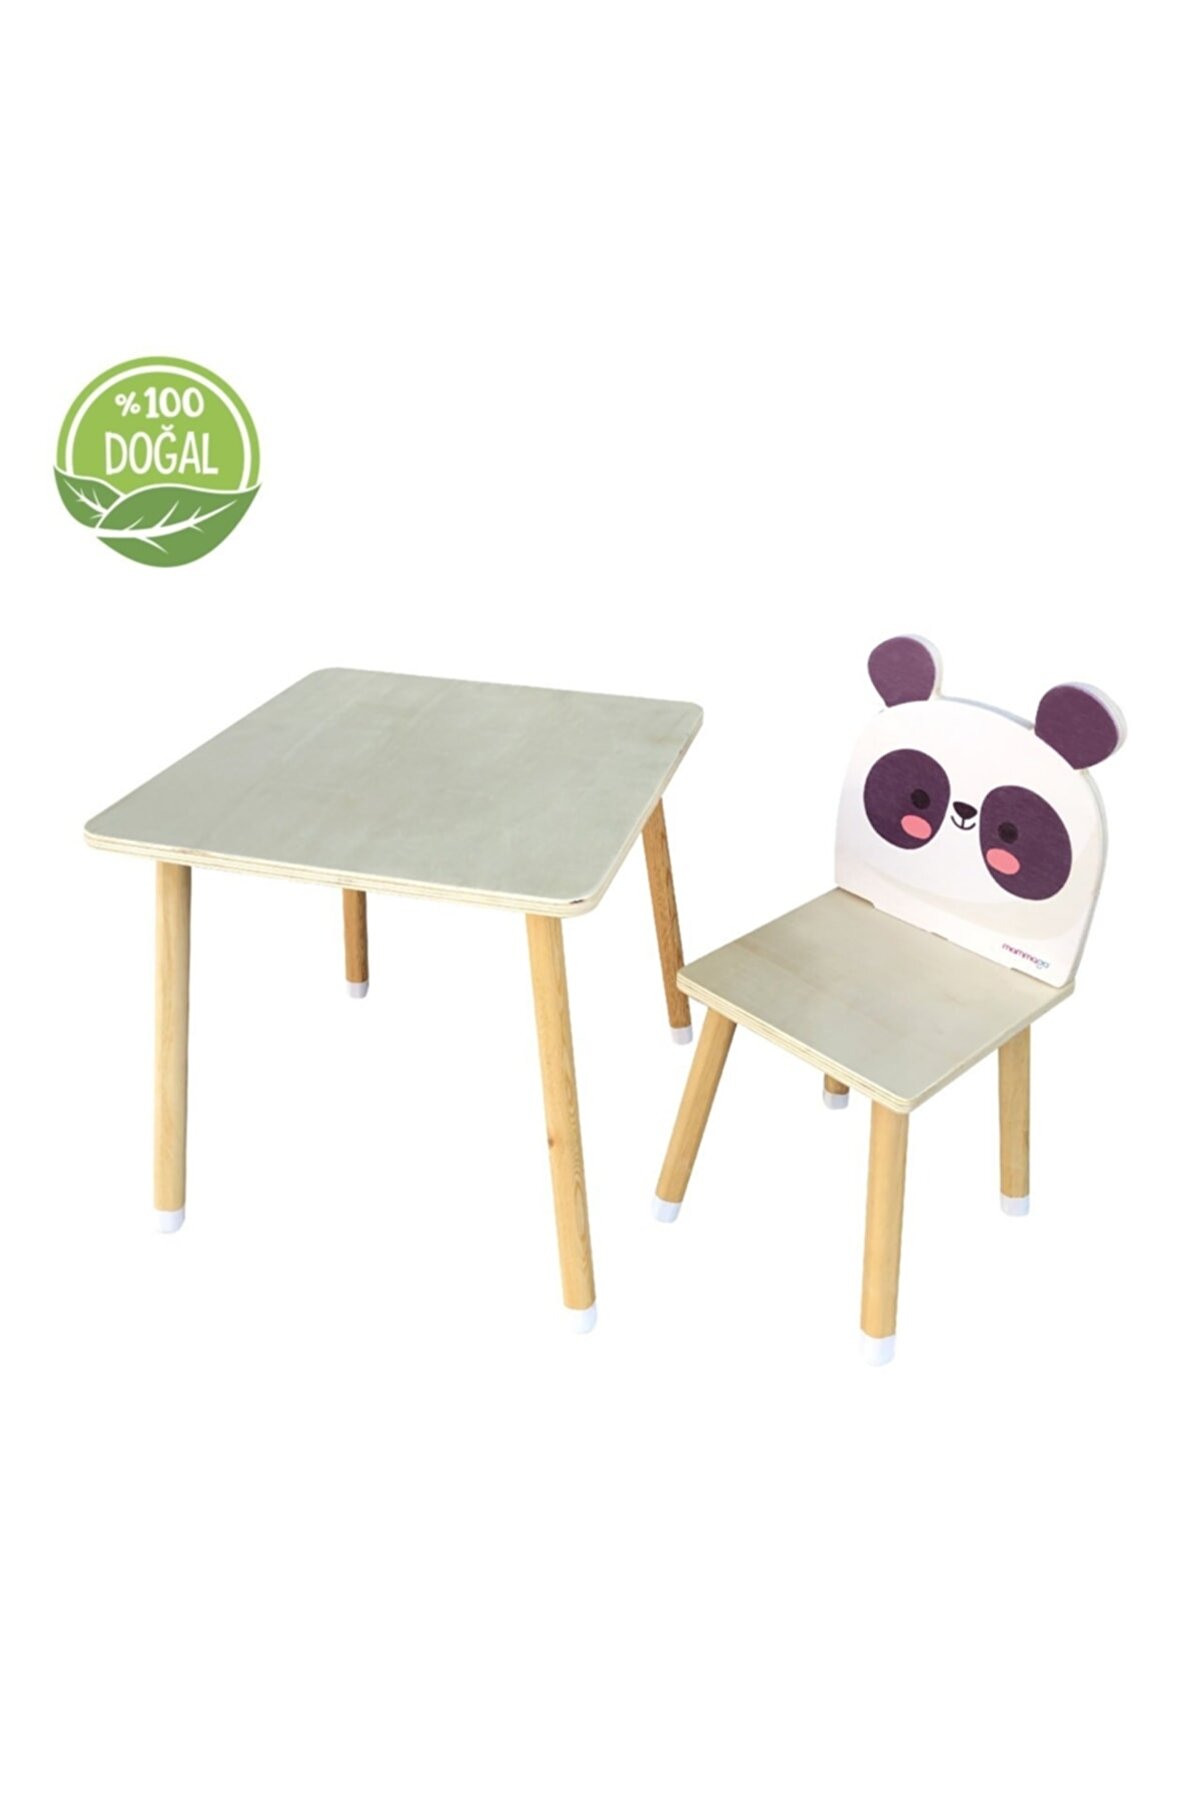 Doğal Ahşap Çocuk Aktivite Masa Ve Sandalye Takımı - Mr. Panda_1